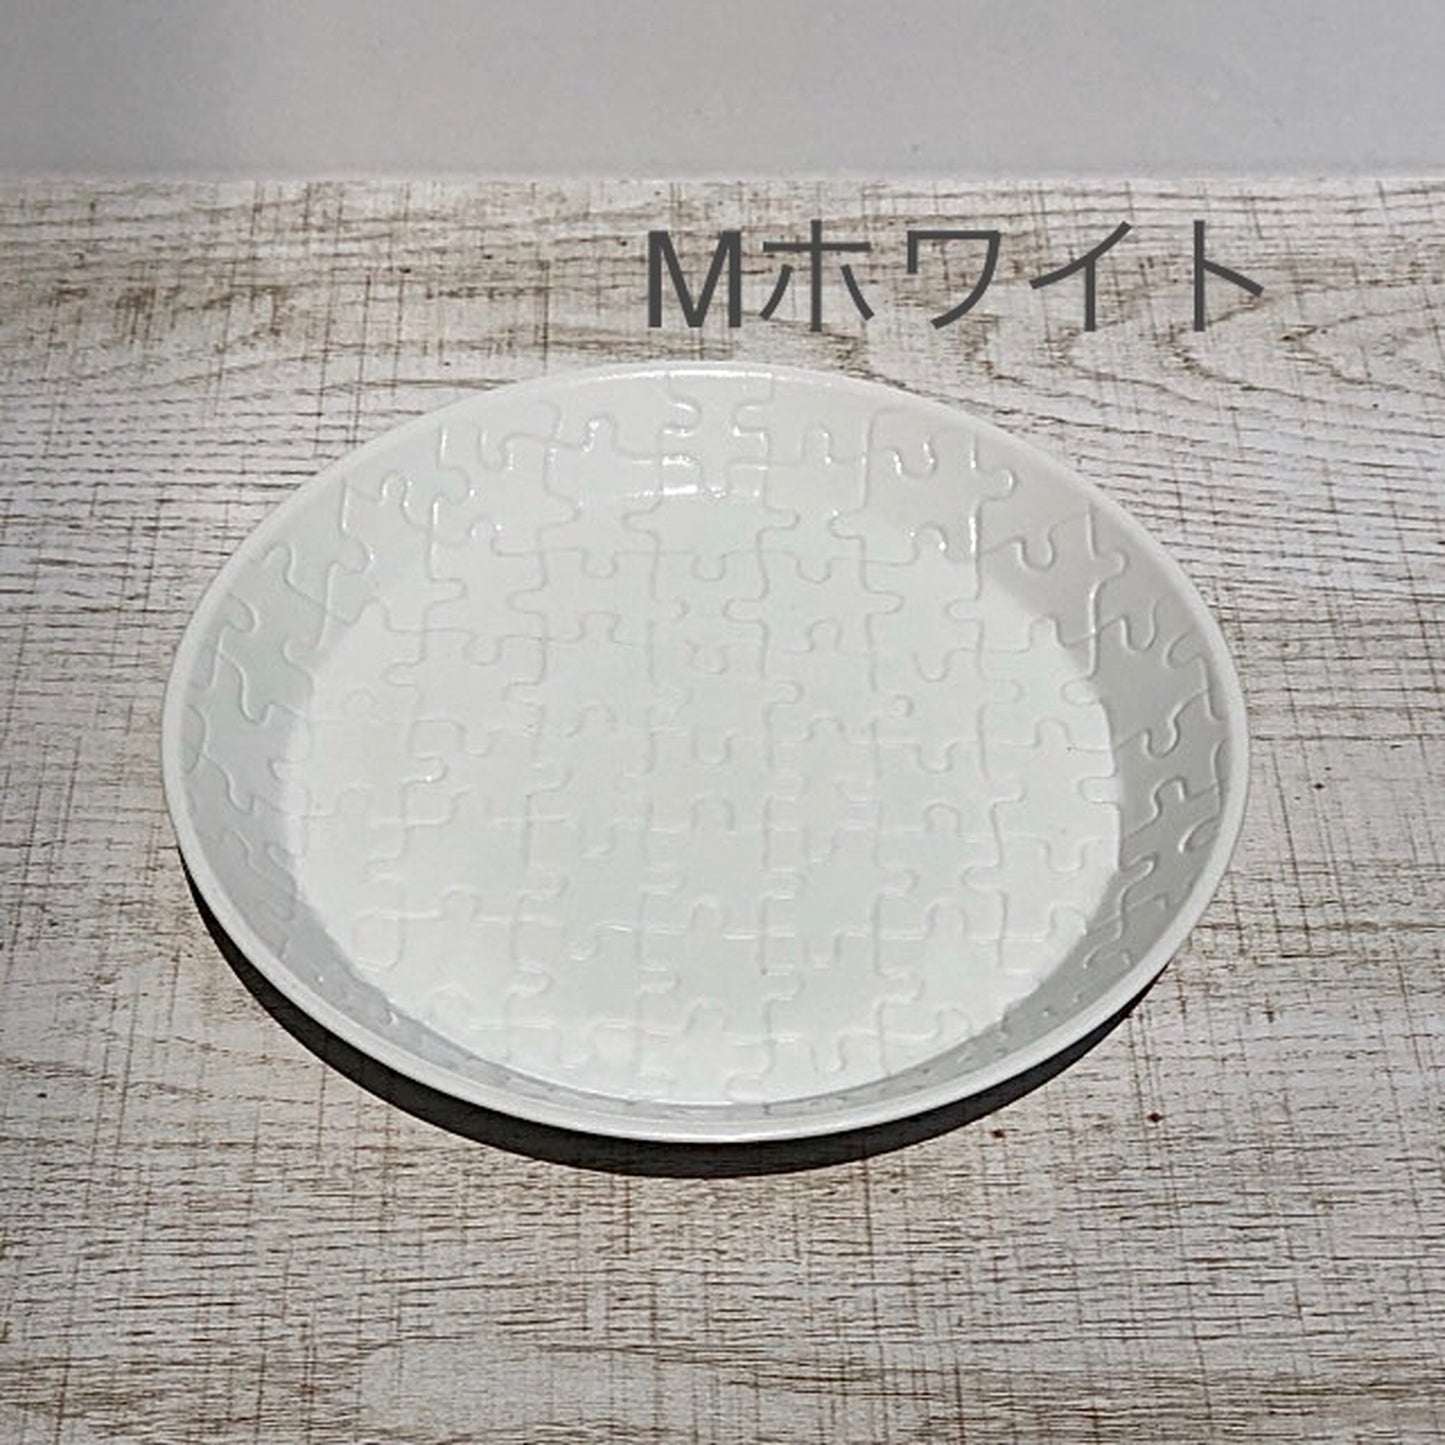 【波佐见烧】【Nakazen】【拼图】【Plate M】16.5cm Jigsaw Puzzle Plate Cake Plate Hasami Ware Fashion Adult Colorful Cute